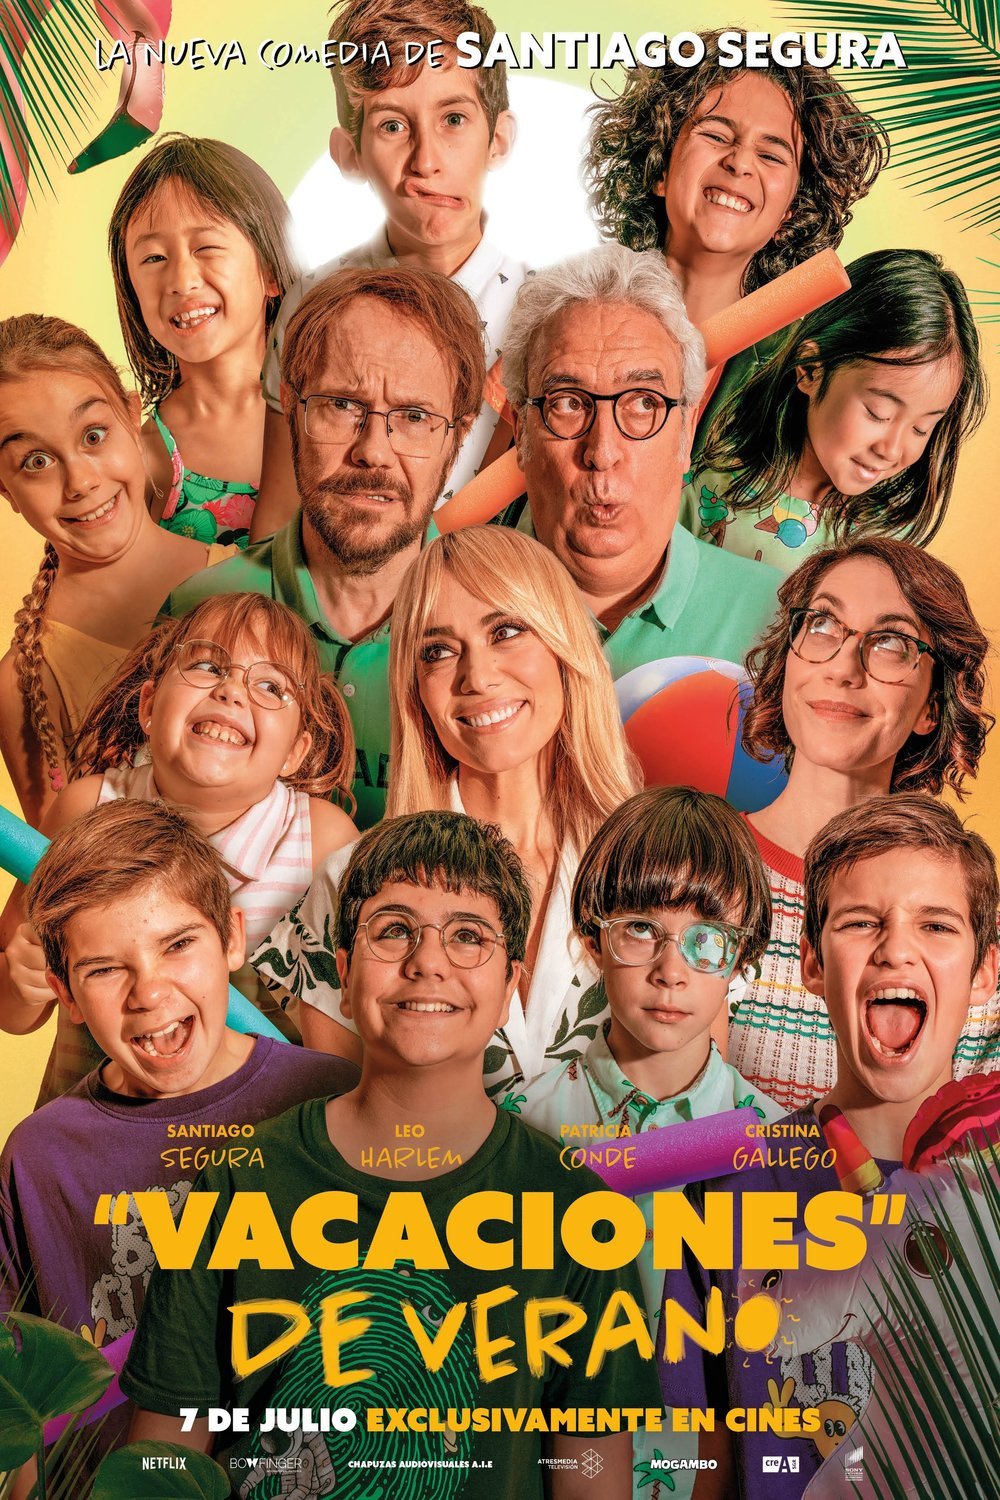 Spanish poster of the movie Vacaciones de verano